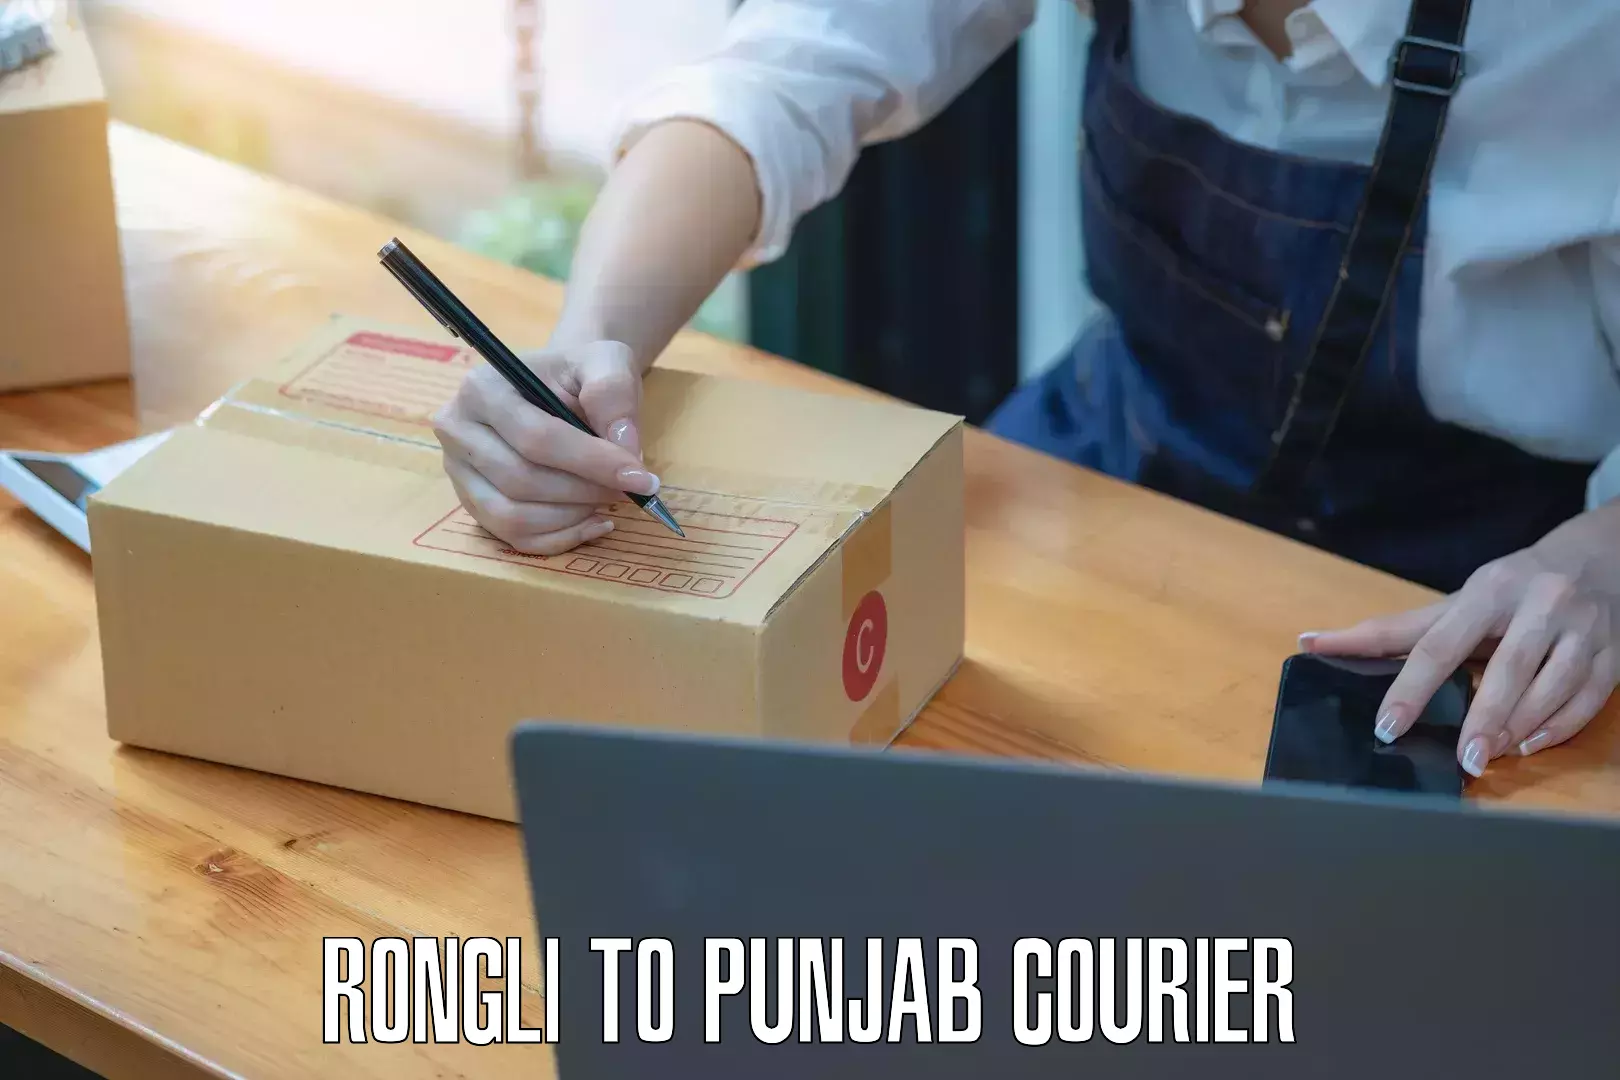 Bulk order courier Rongli to Punjab